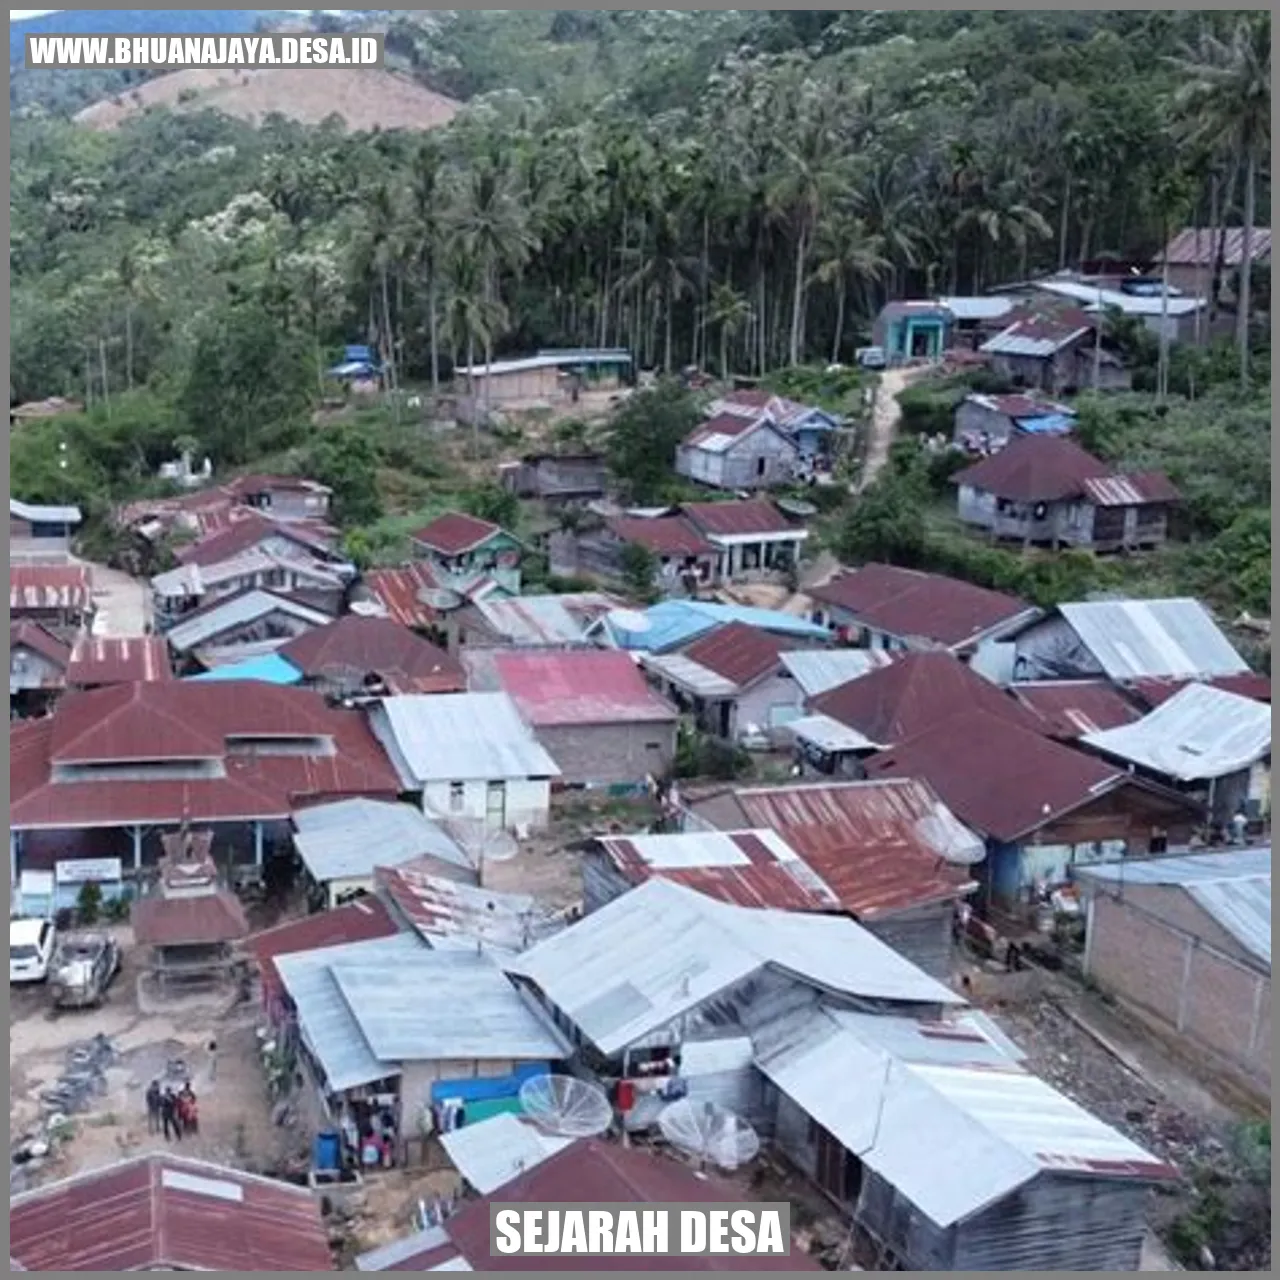 Sejarah Desa Bhuana Jaya Jaya